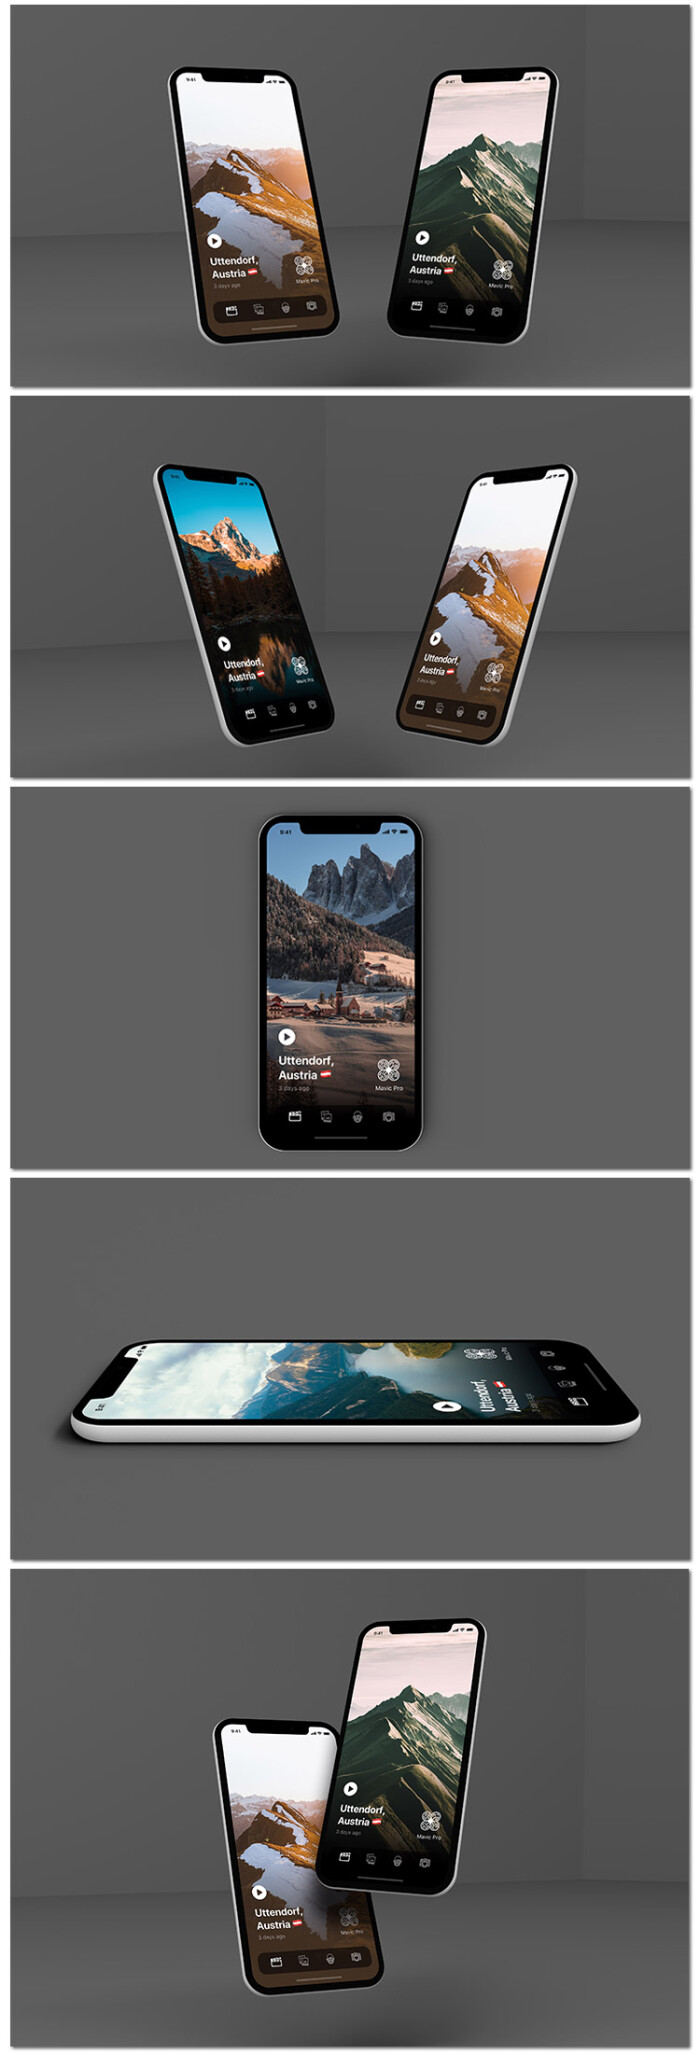 iphone x苹果手机元素展示样机模型高清贴图海报psd模板素材设计